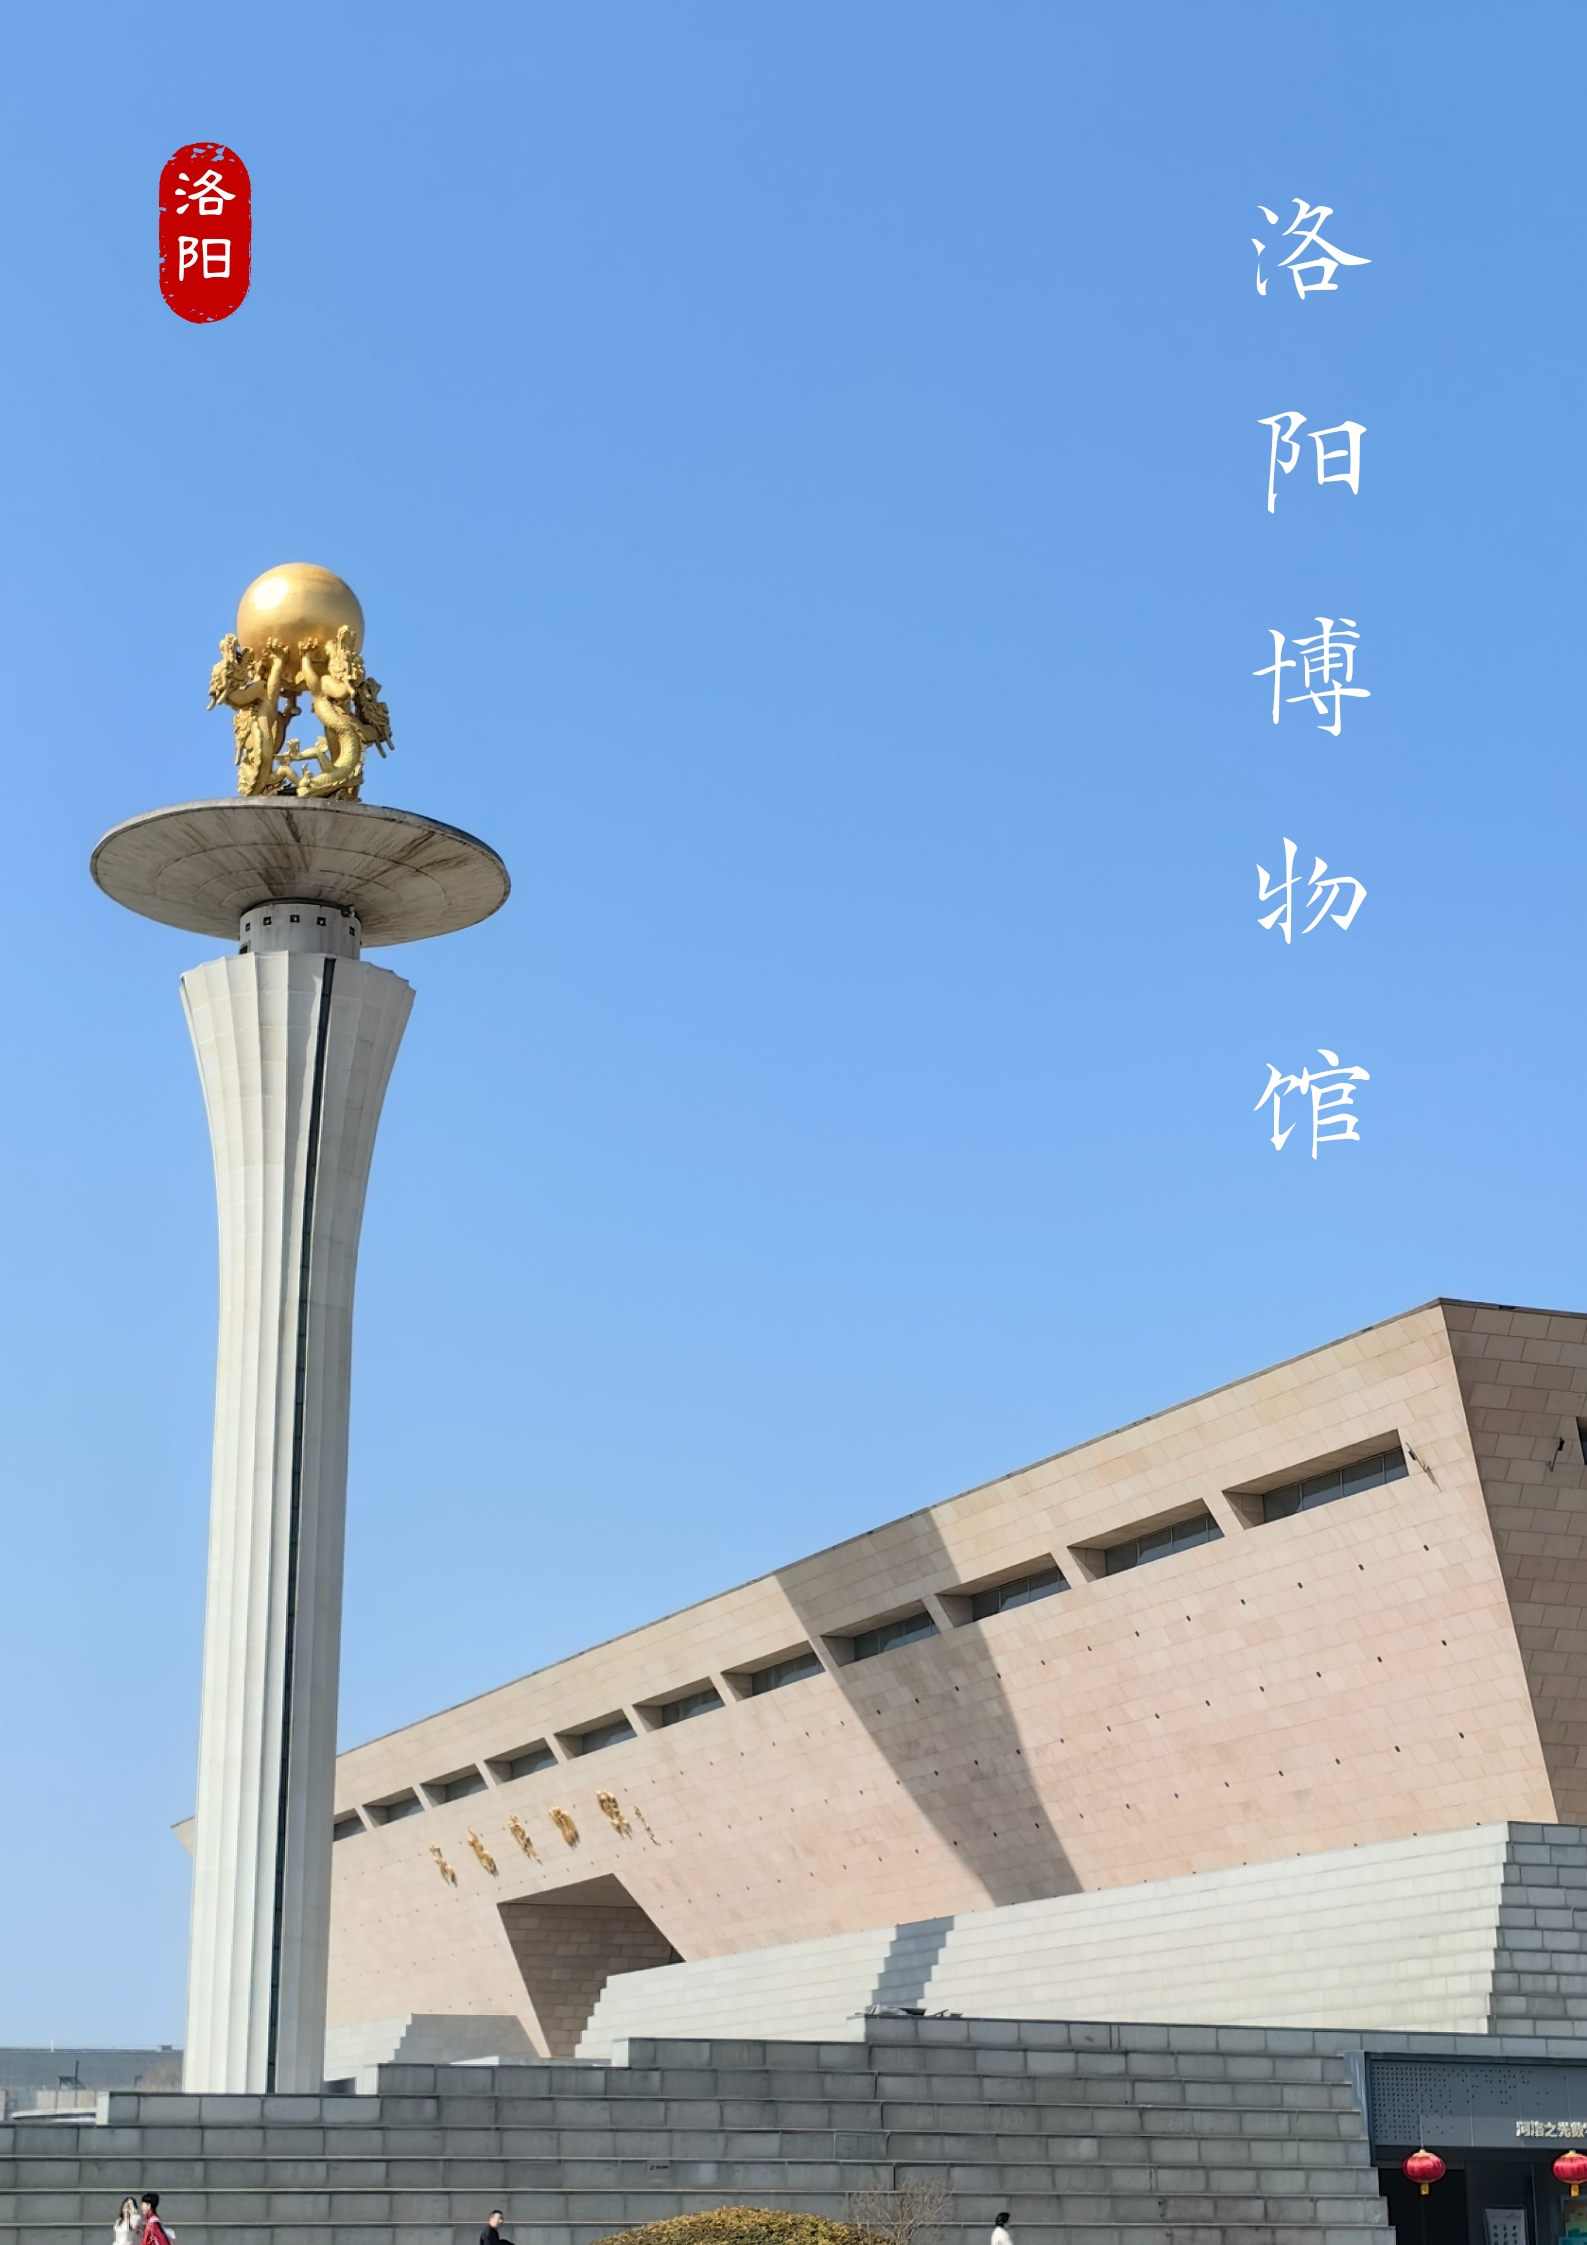 【洛阳展馆】去洛阳博物馆看半部中国史